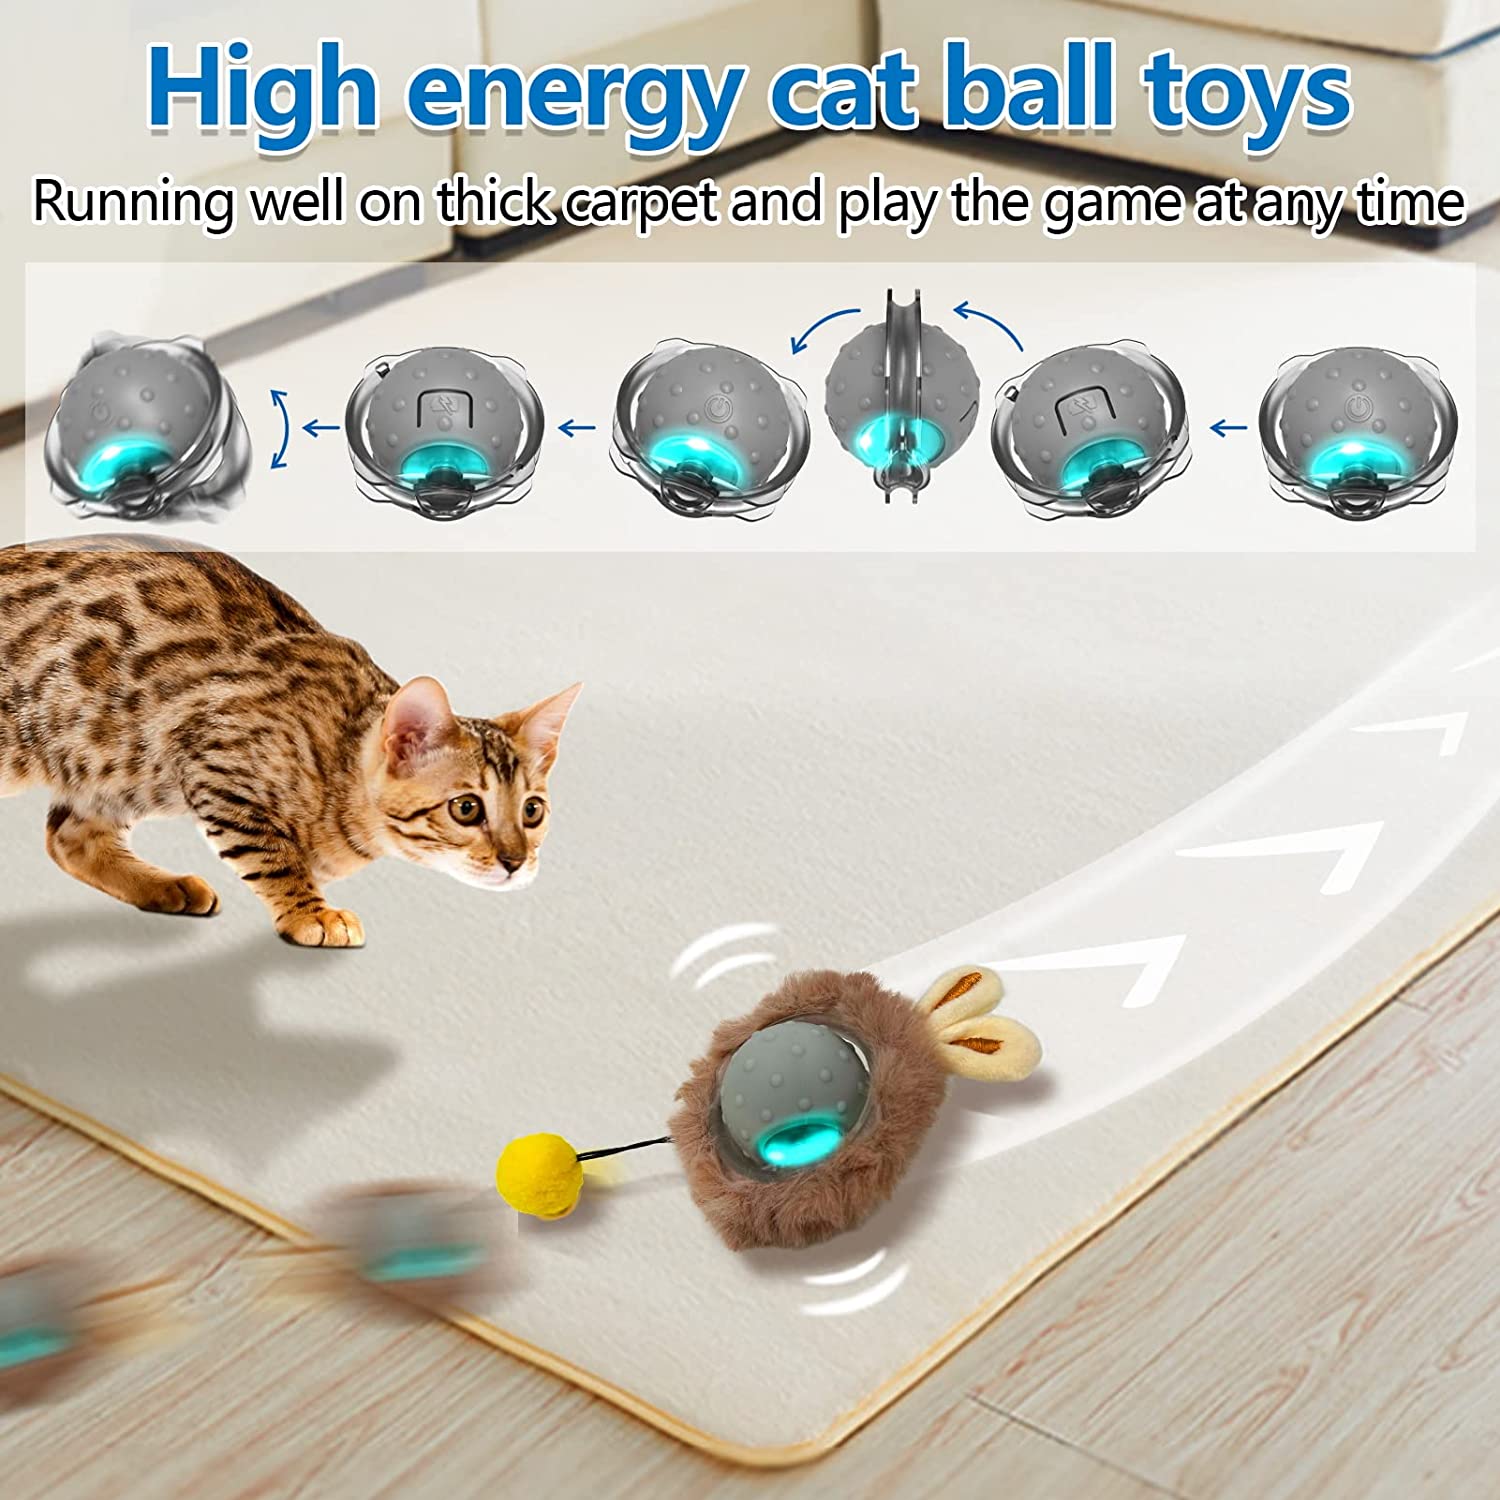  اگر در عرض 1 ساعت هیچ لمسی برای شروع وجود نداشته باشد، اسباب بازی های الکترونیکی گربه به طور خودکار به مدت 30 ثانیه شروع به کار می کنند و سپس وارد حالت آماده به کار می شوند و غیره.